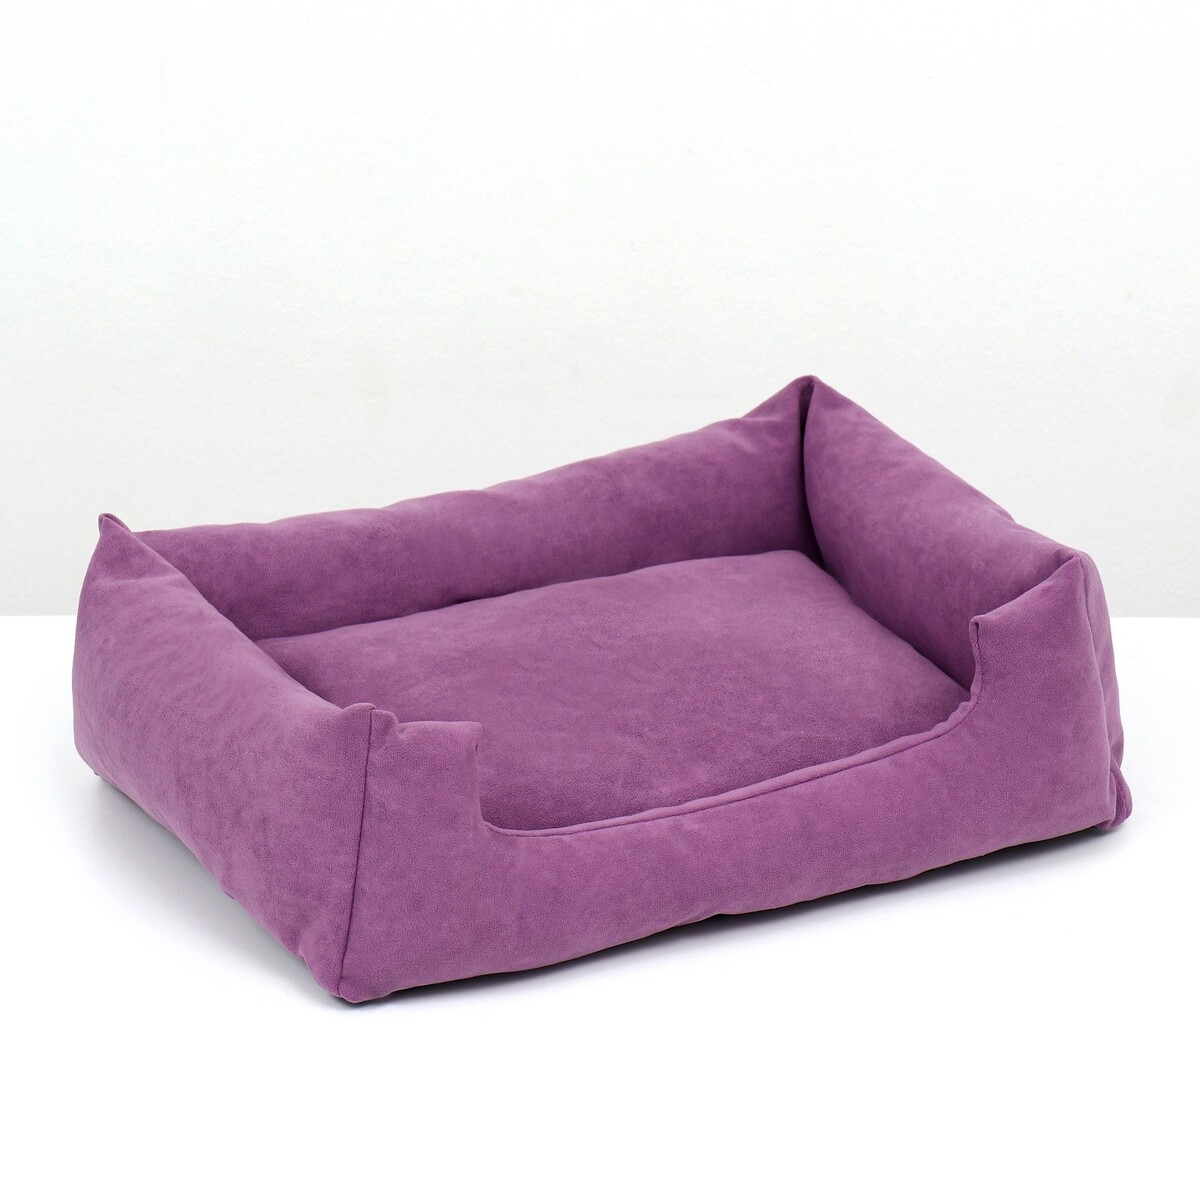 Лежанка-диван, 45 х 35 х 11 см, фиолетовая лежанка диван 45 х 35 х 11 см фиолетовая